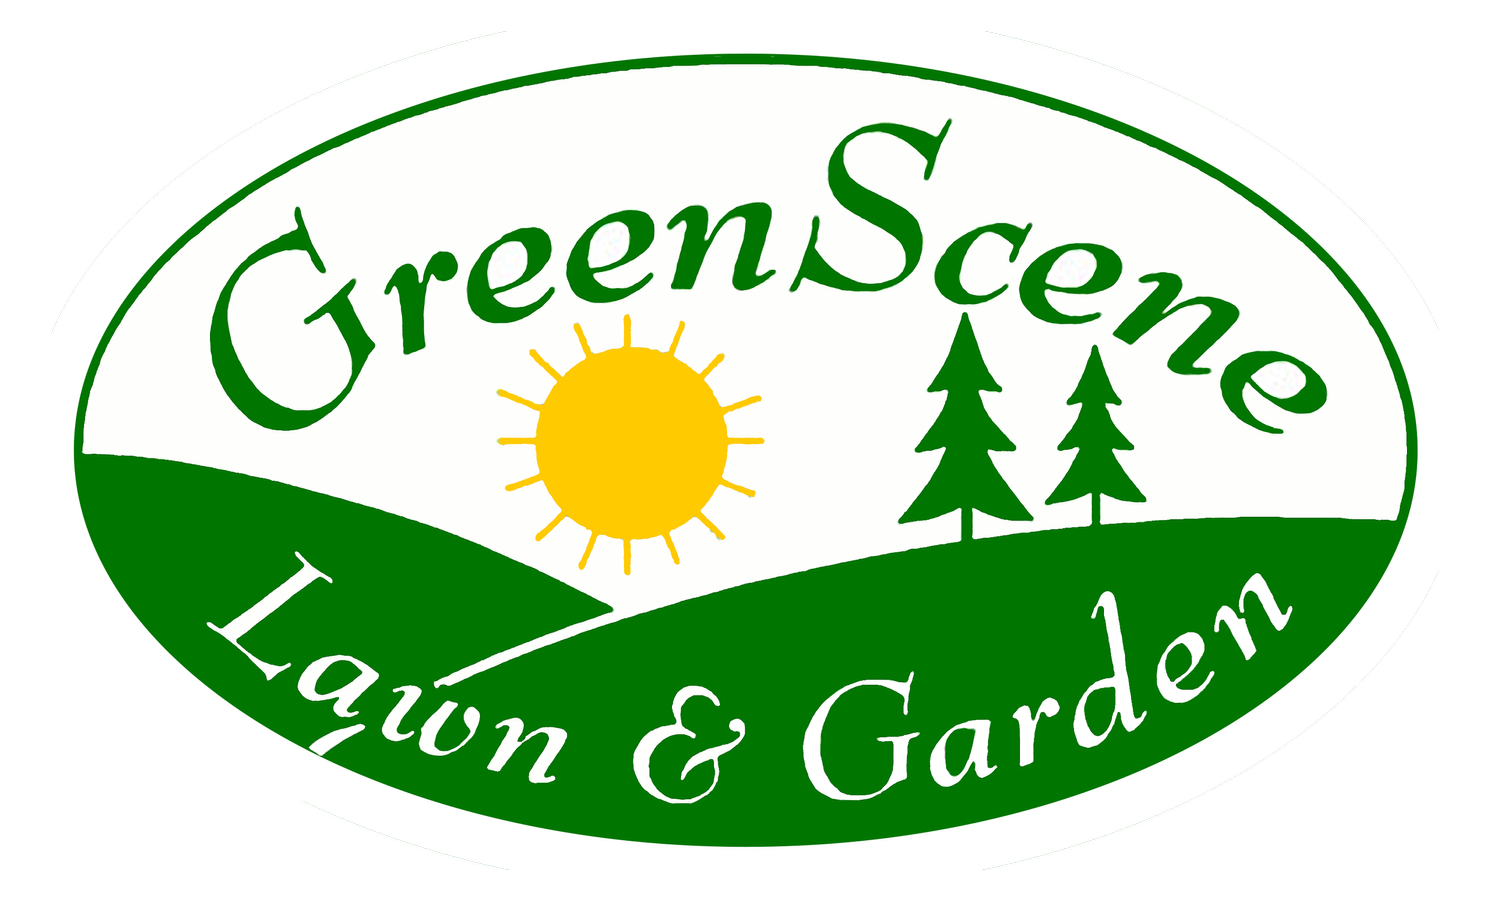 GreenScene Lawn and Garden